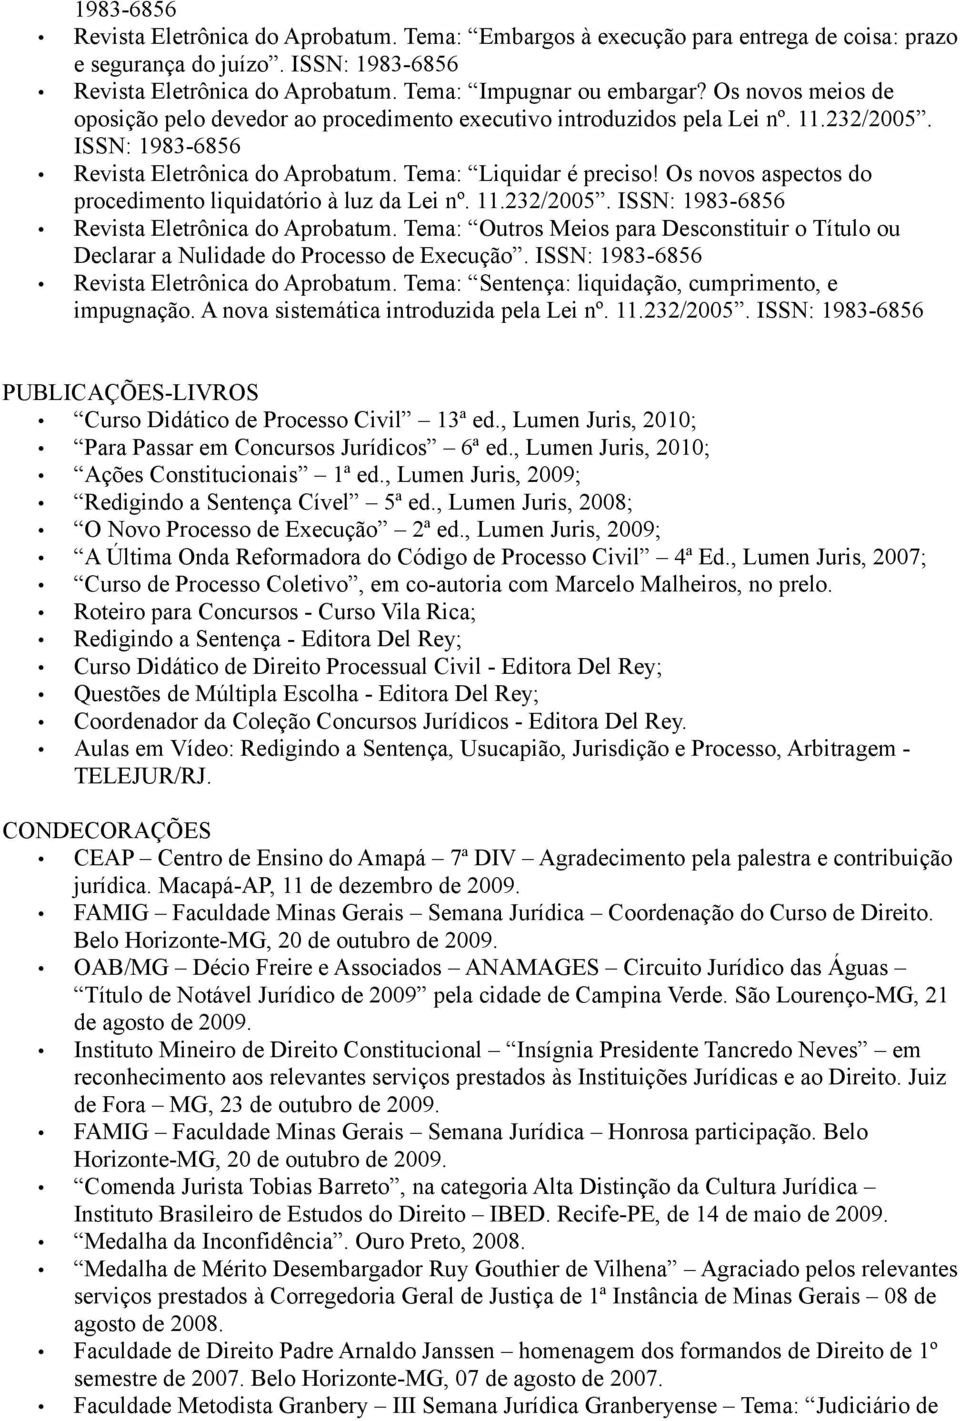 Os novos aspectos do procedimento liquidatório à luz da Lei nº. 11.232/2005. ISSN: 1983-6856 Revista Eletrônica do Aprobatum.